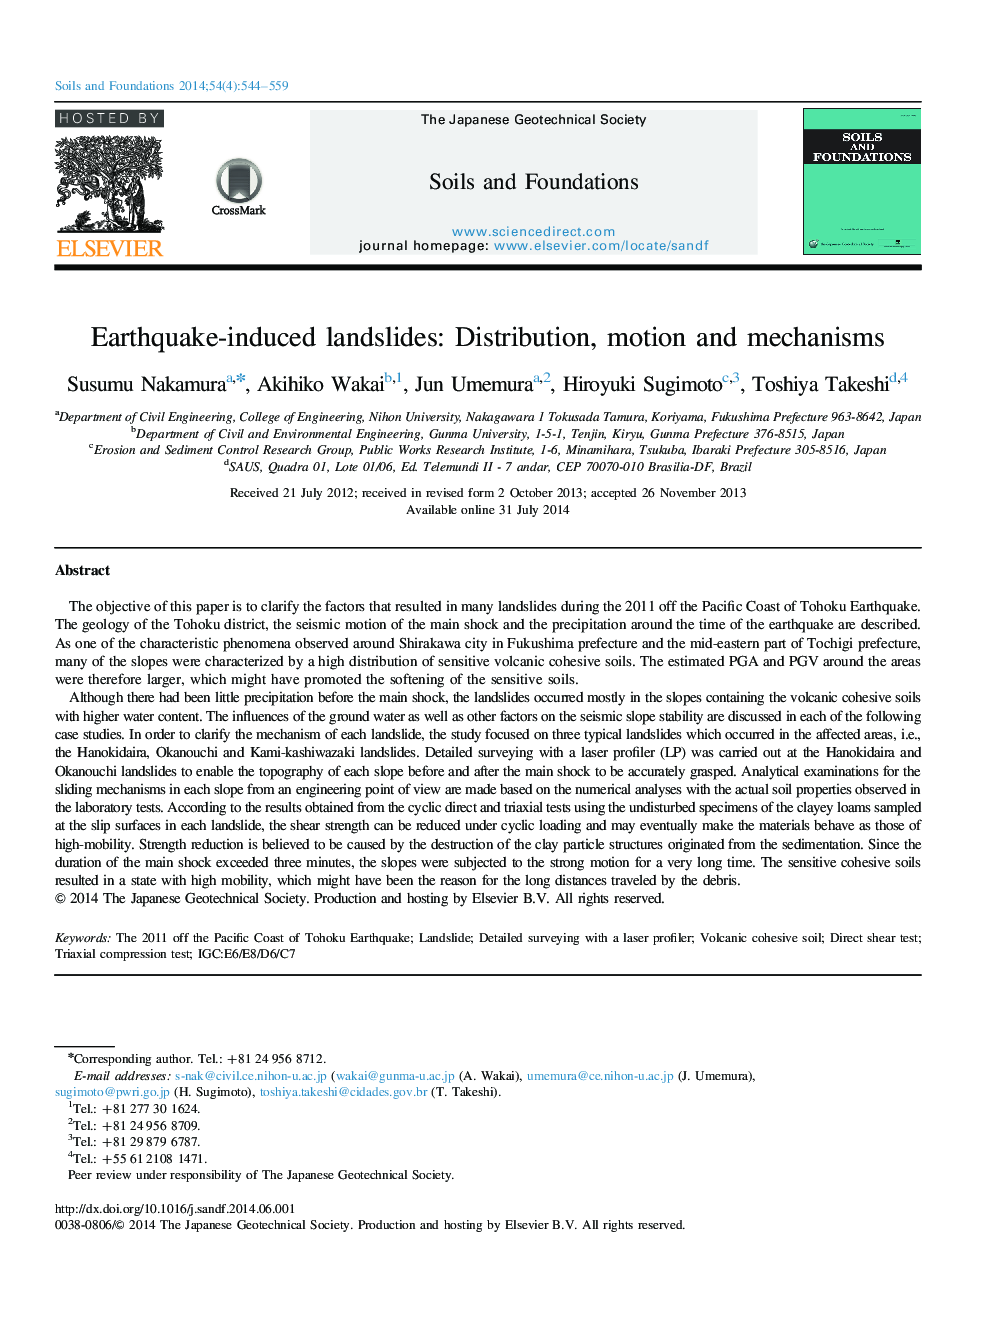 زمین لغزش ناشی از زلزله: توزیع، حرکت و مکانیسم 